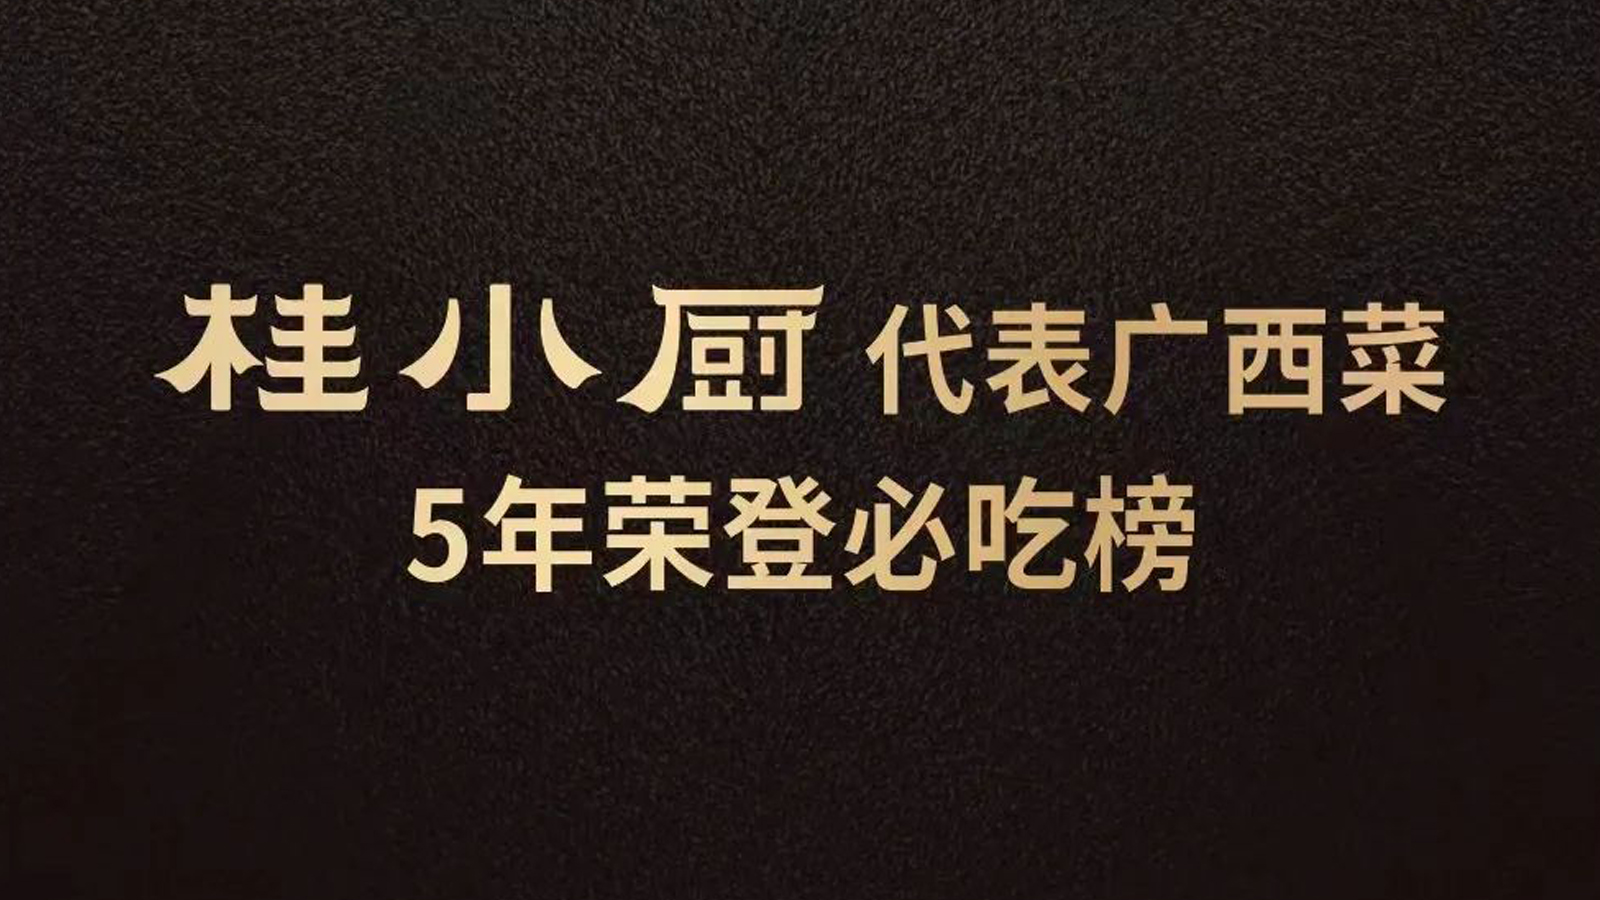 桂小厨代表广西菜5年荣登必吃榜